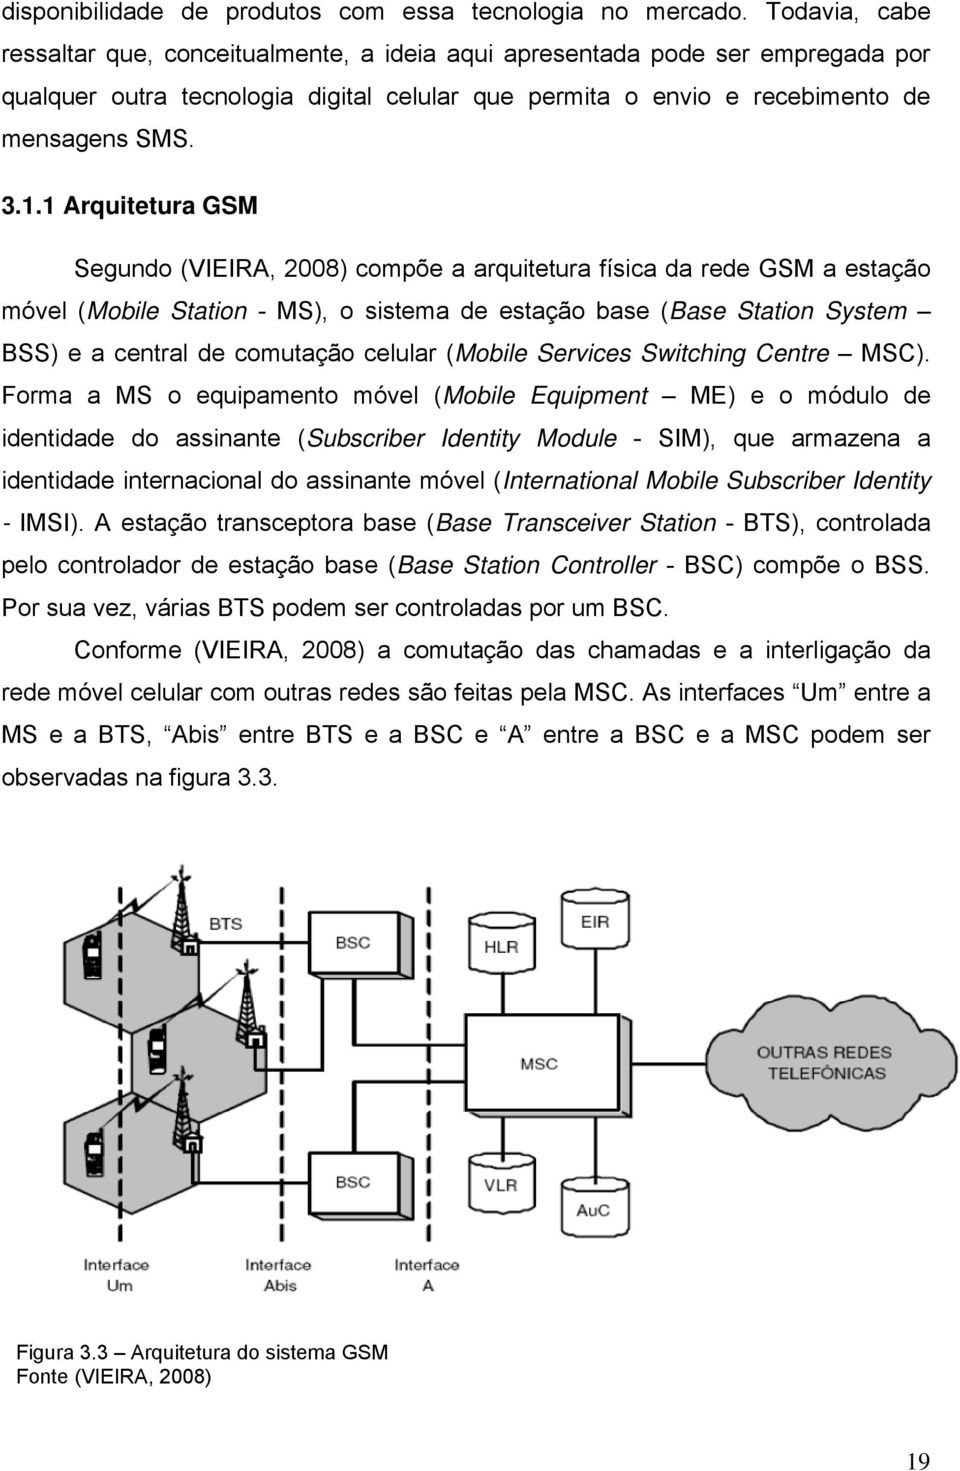 1 Arquitetura GSM Segundo (VIEIRA, 2008) compõe a arquitetura física da rede GSM a estação móvel (Mobile Station - MS), o sistema de estação base (Base Station System BSS) e a central de comutação